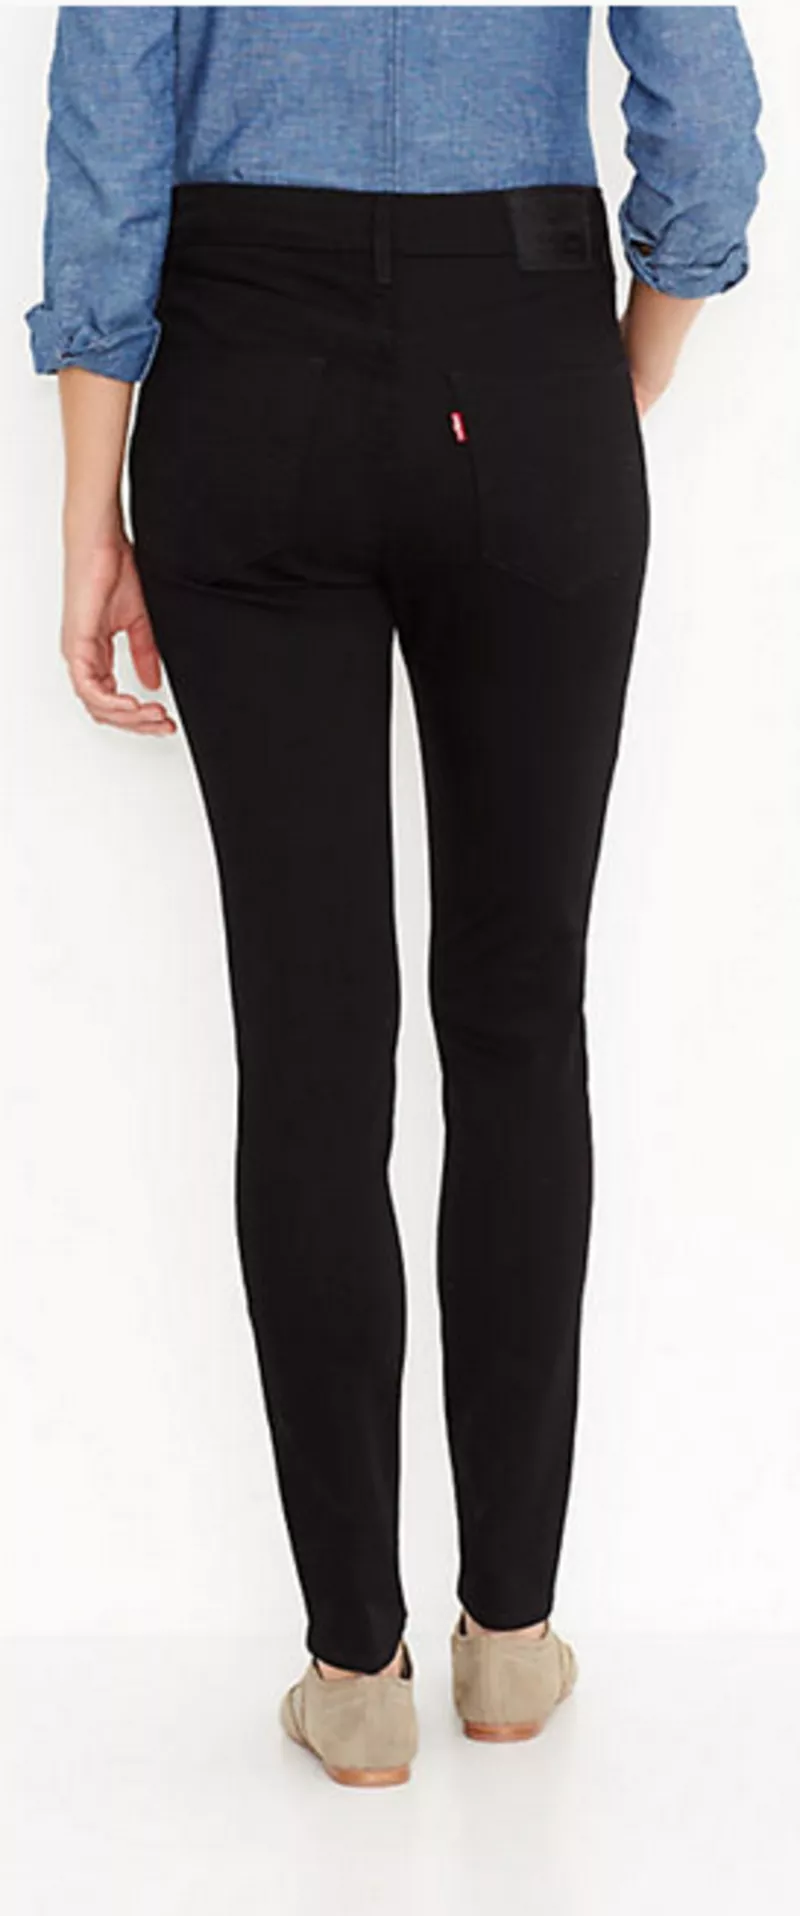 Продам женские фирменные джинсы Levi's 3